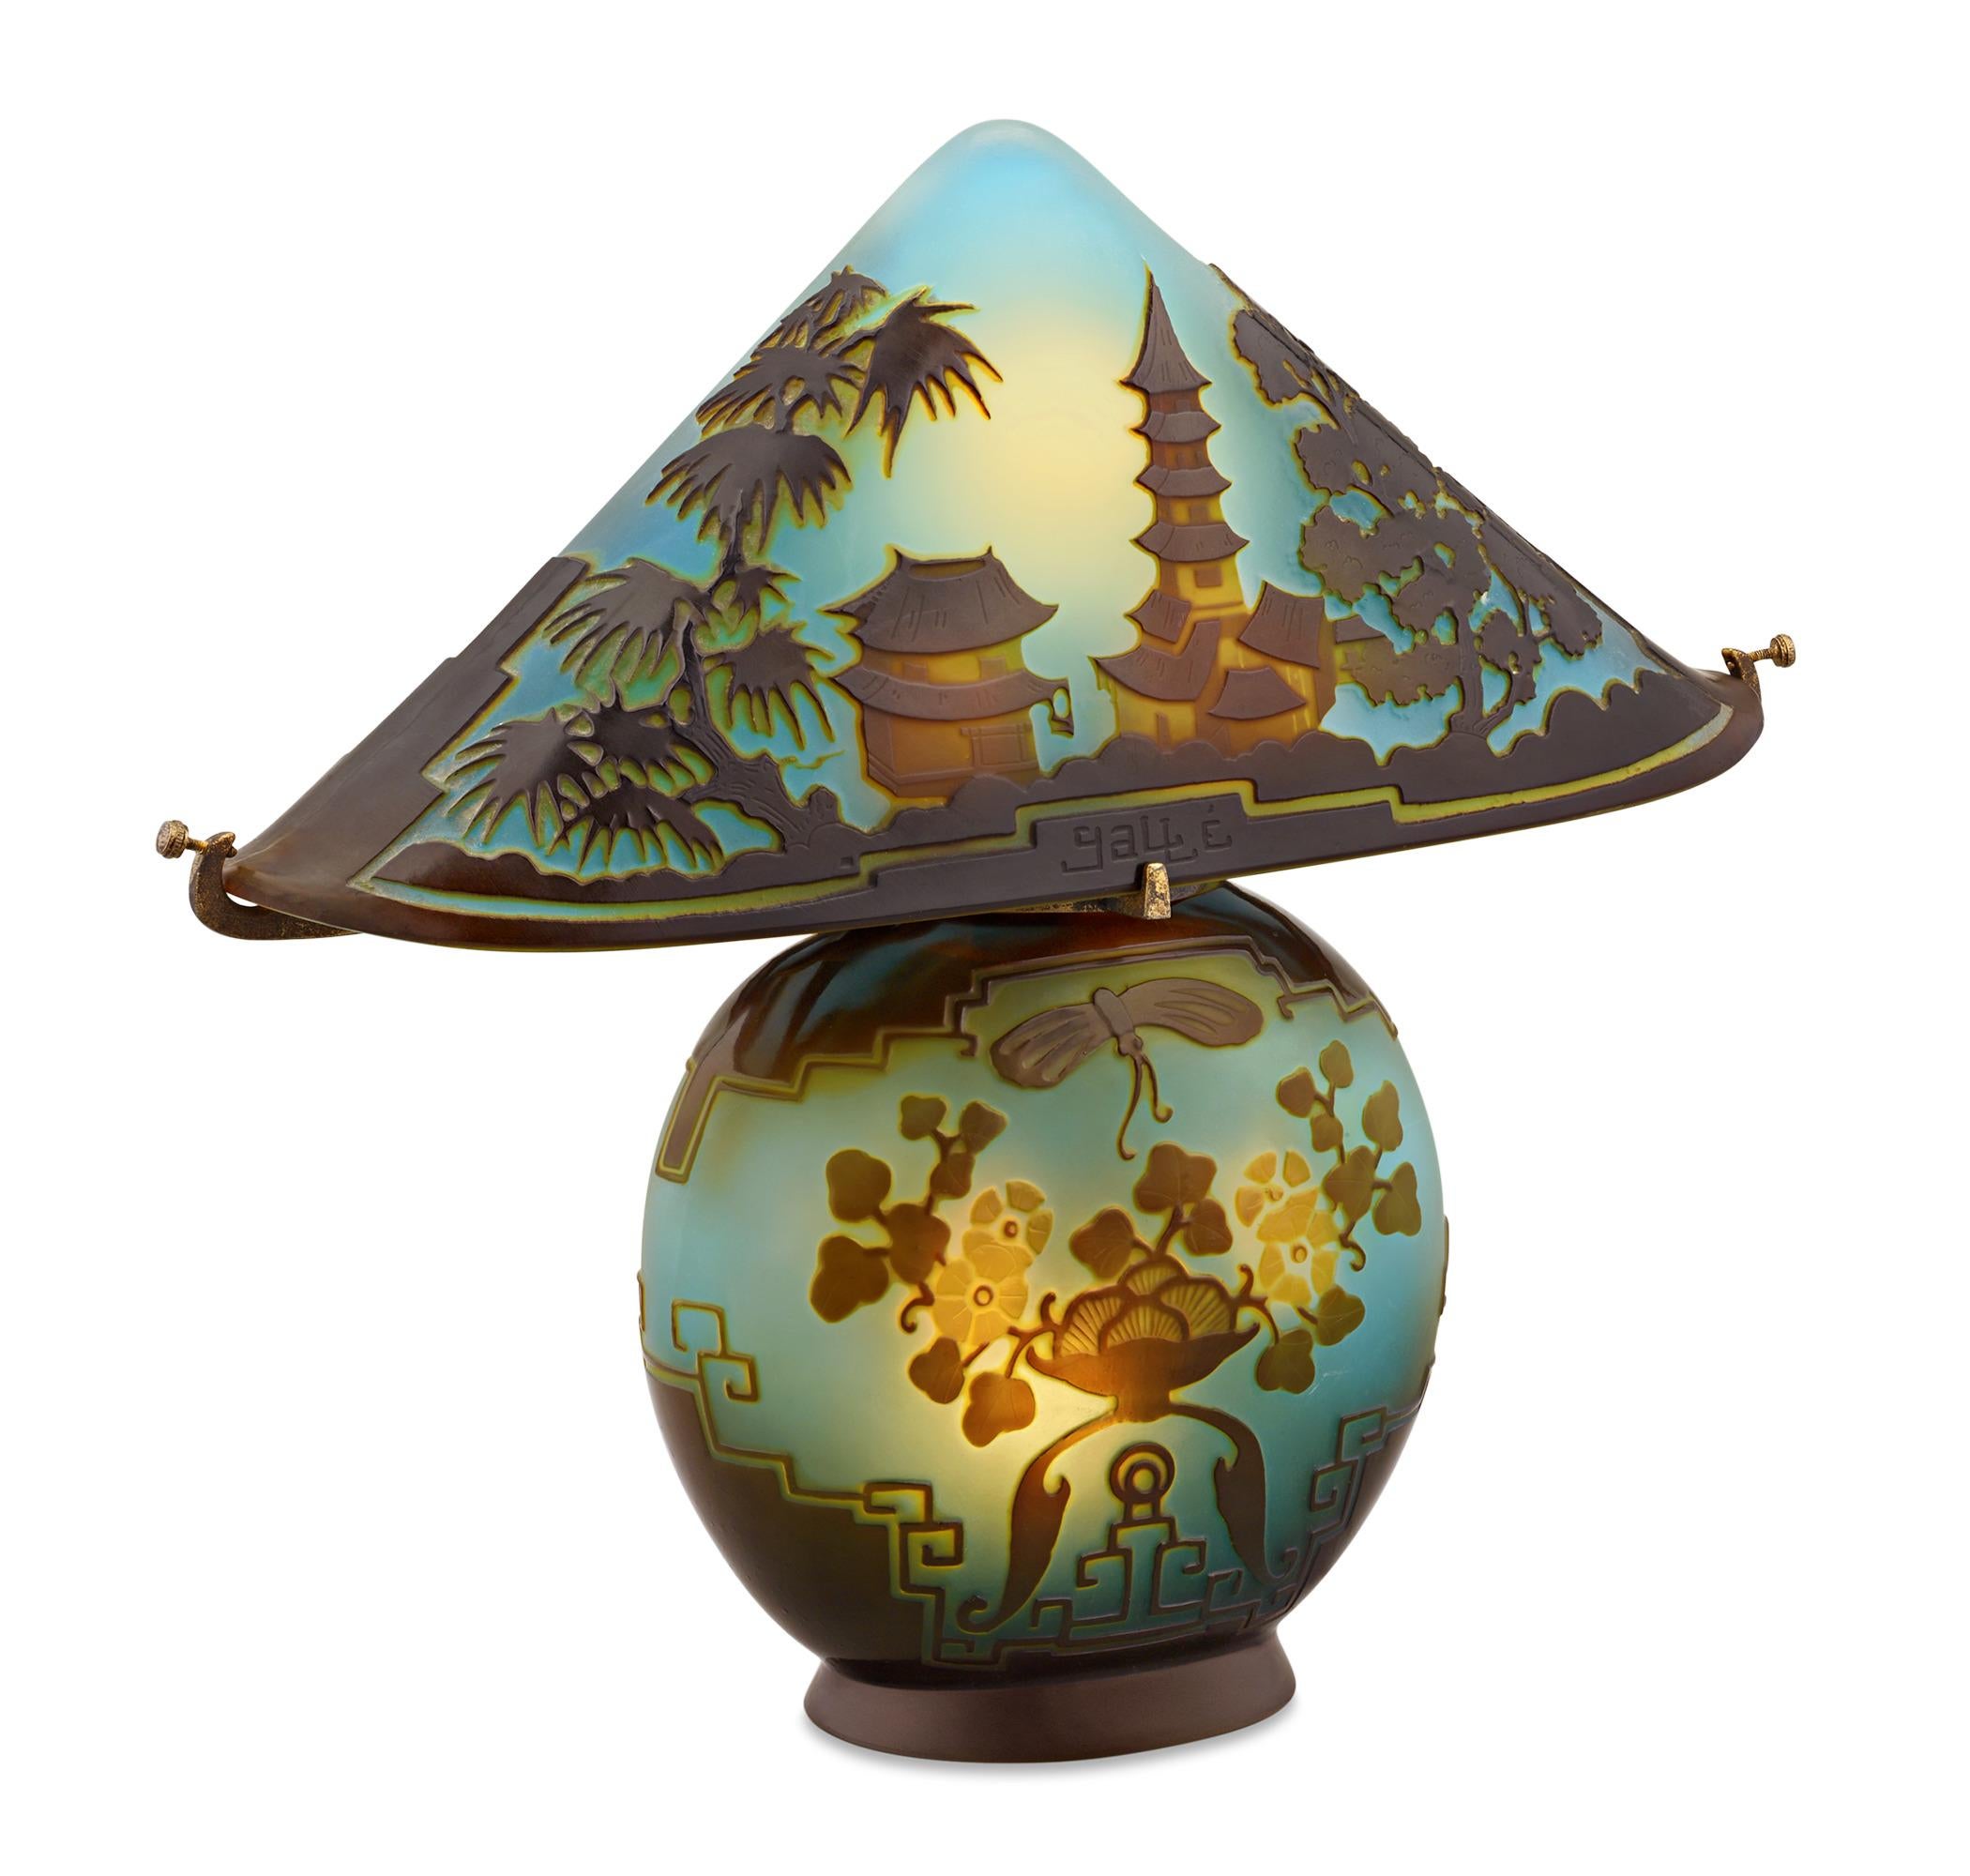 Diese Pagoda Cameo-Glaslampe ist ein äußerst seltenes und begehrtes Beispiel für die meisterhafte Glasmacherkunst von Émile Gallé. Lebendige Farbschichten von Goldgelb bis Mauve strahlen vor einem Hintergrund aus elegant gefrostetem blaugrünem Glas